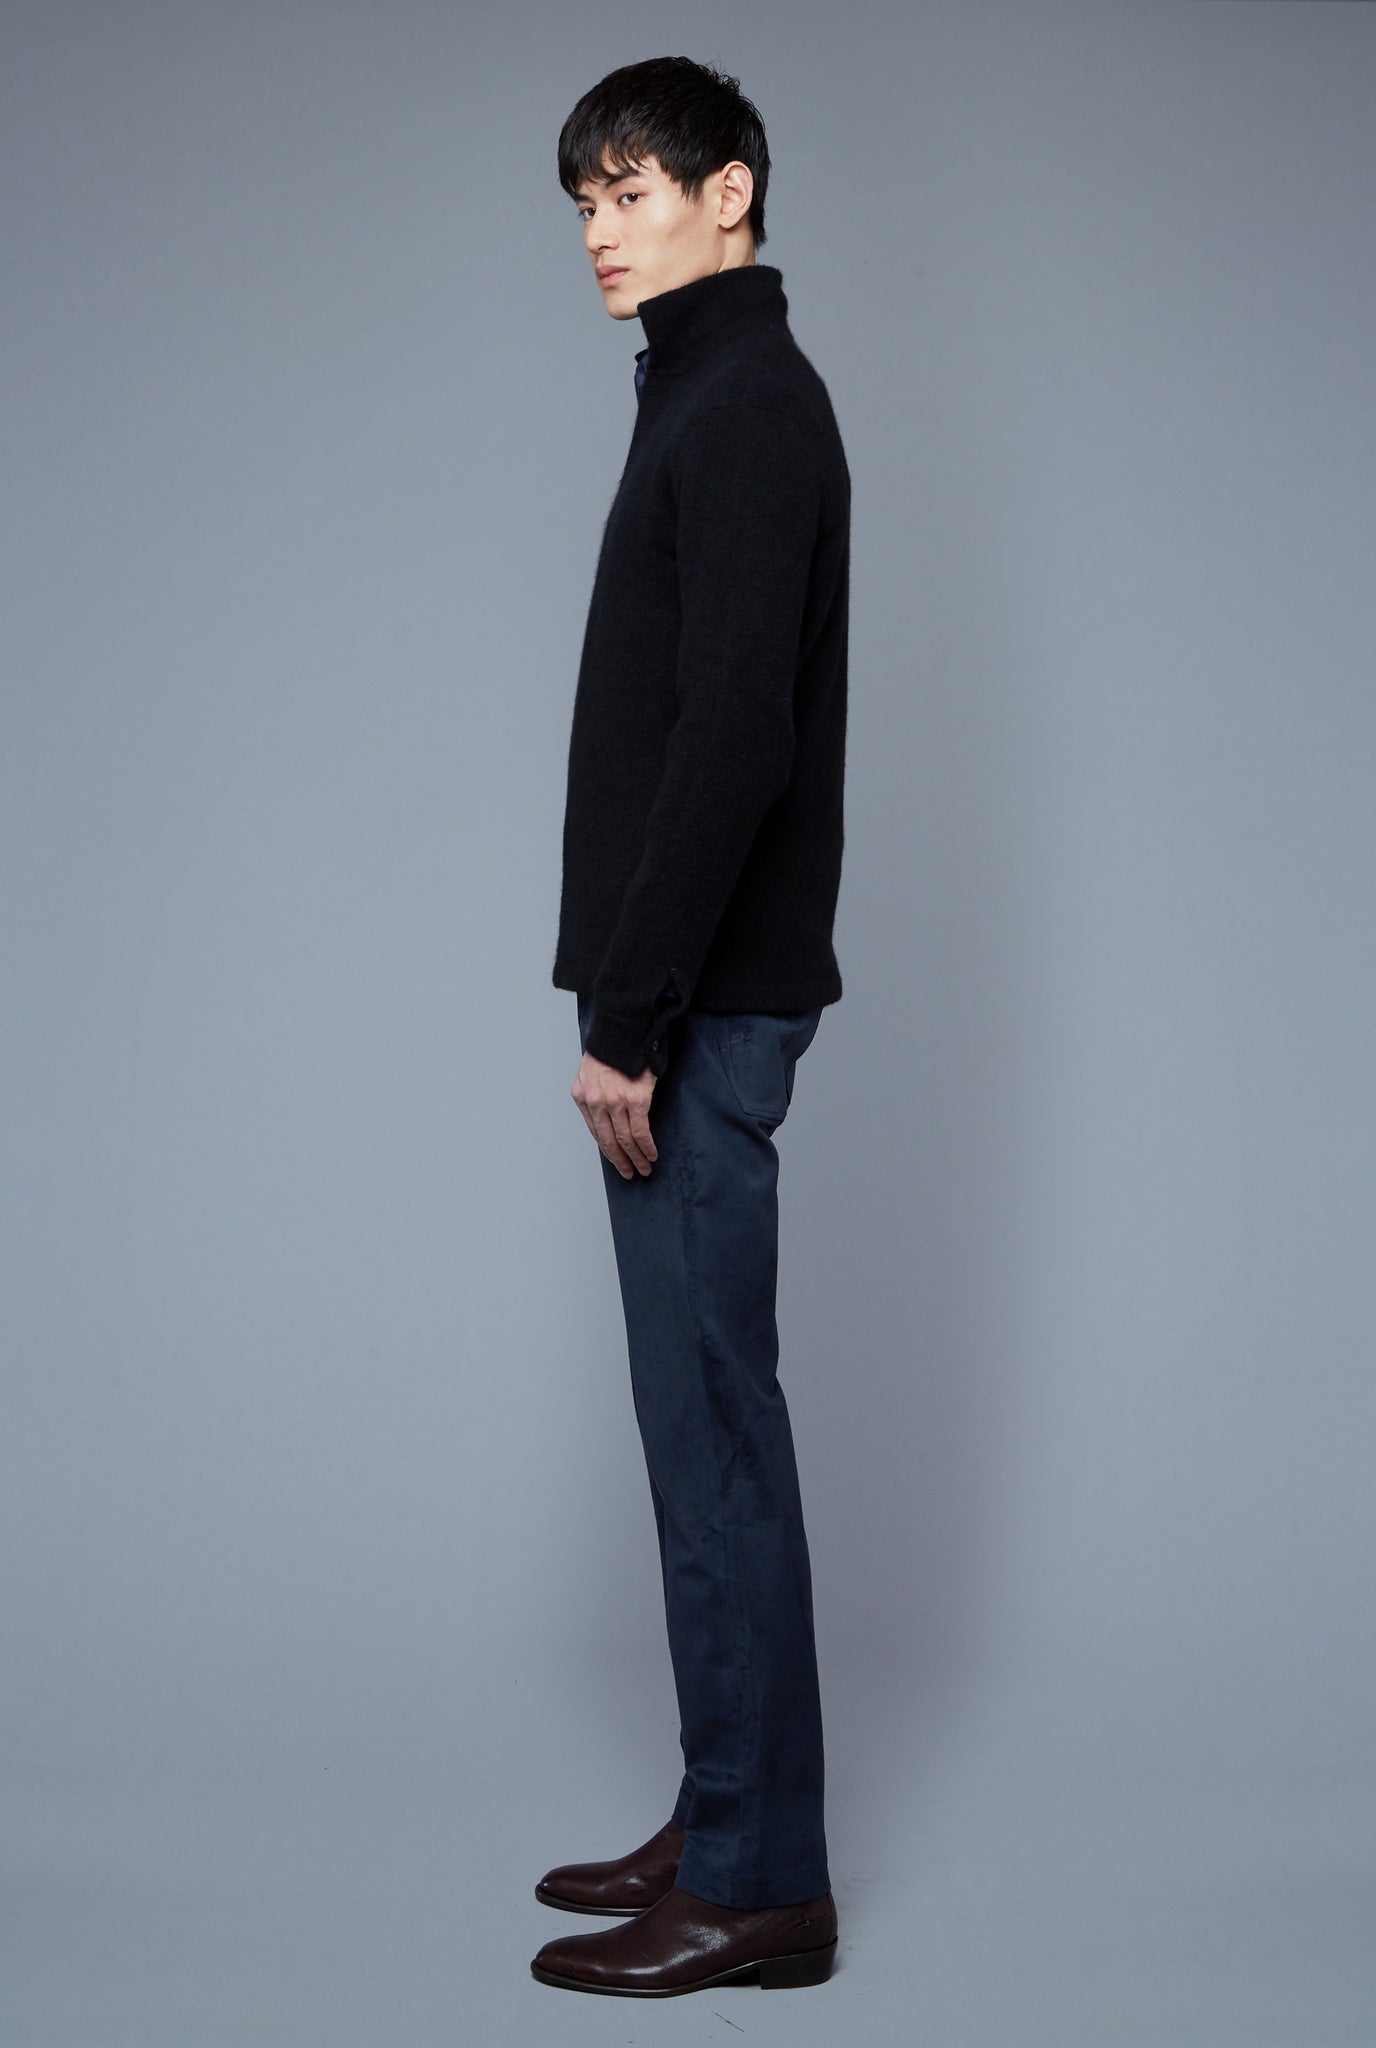 Side View: Model Qiang Li wearing Cashmere Boucle Sweater